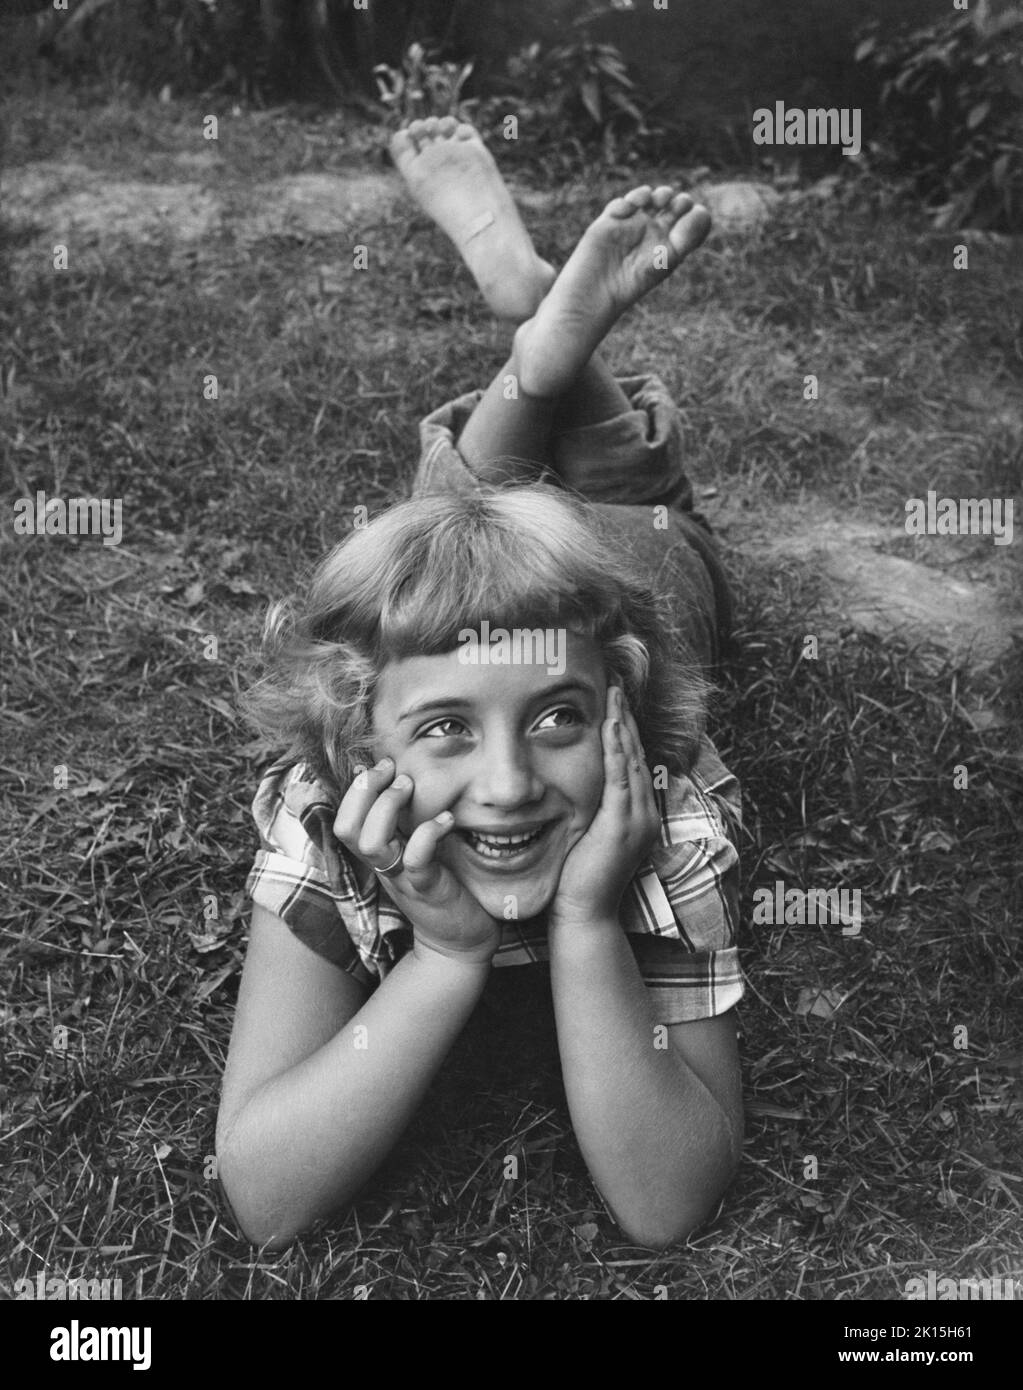 Une jeune fille pieds nus se détend dans l'herbe d'une cour. Banque D'Images